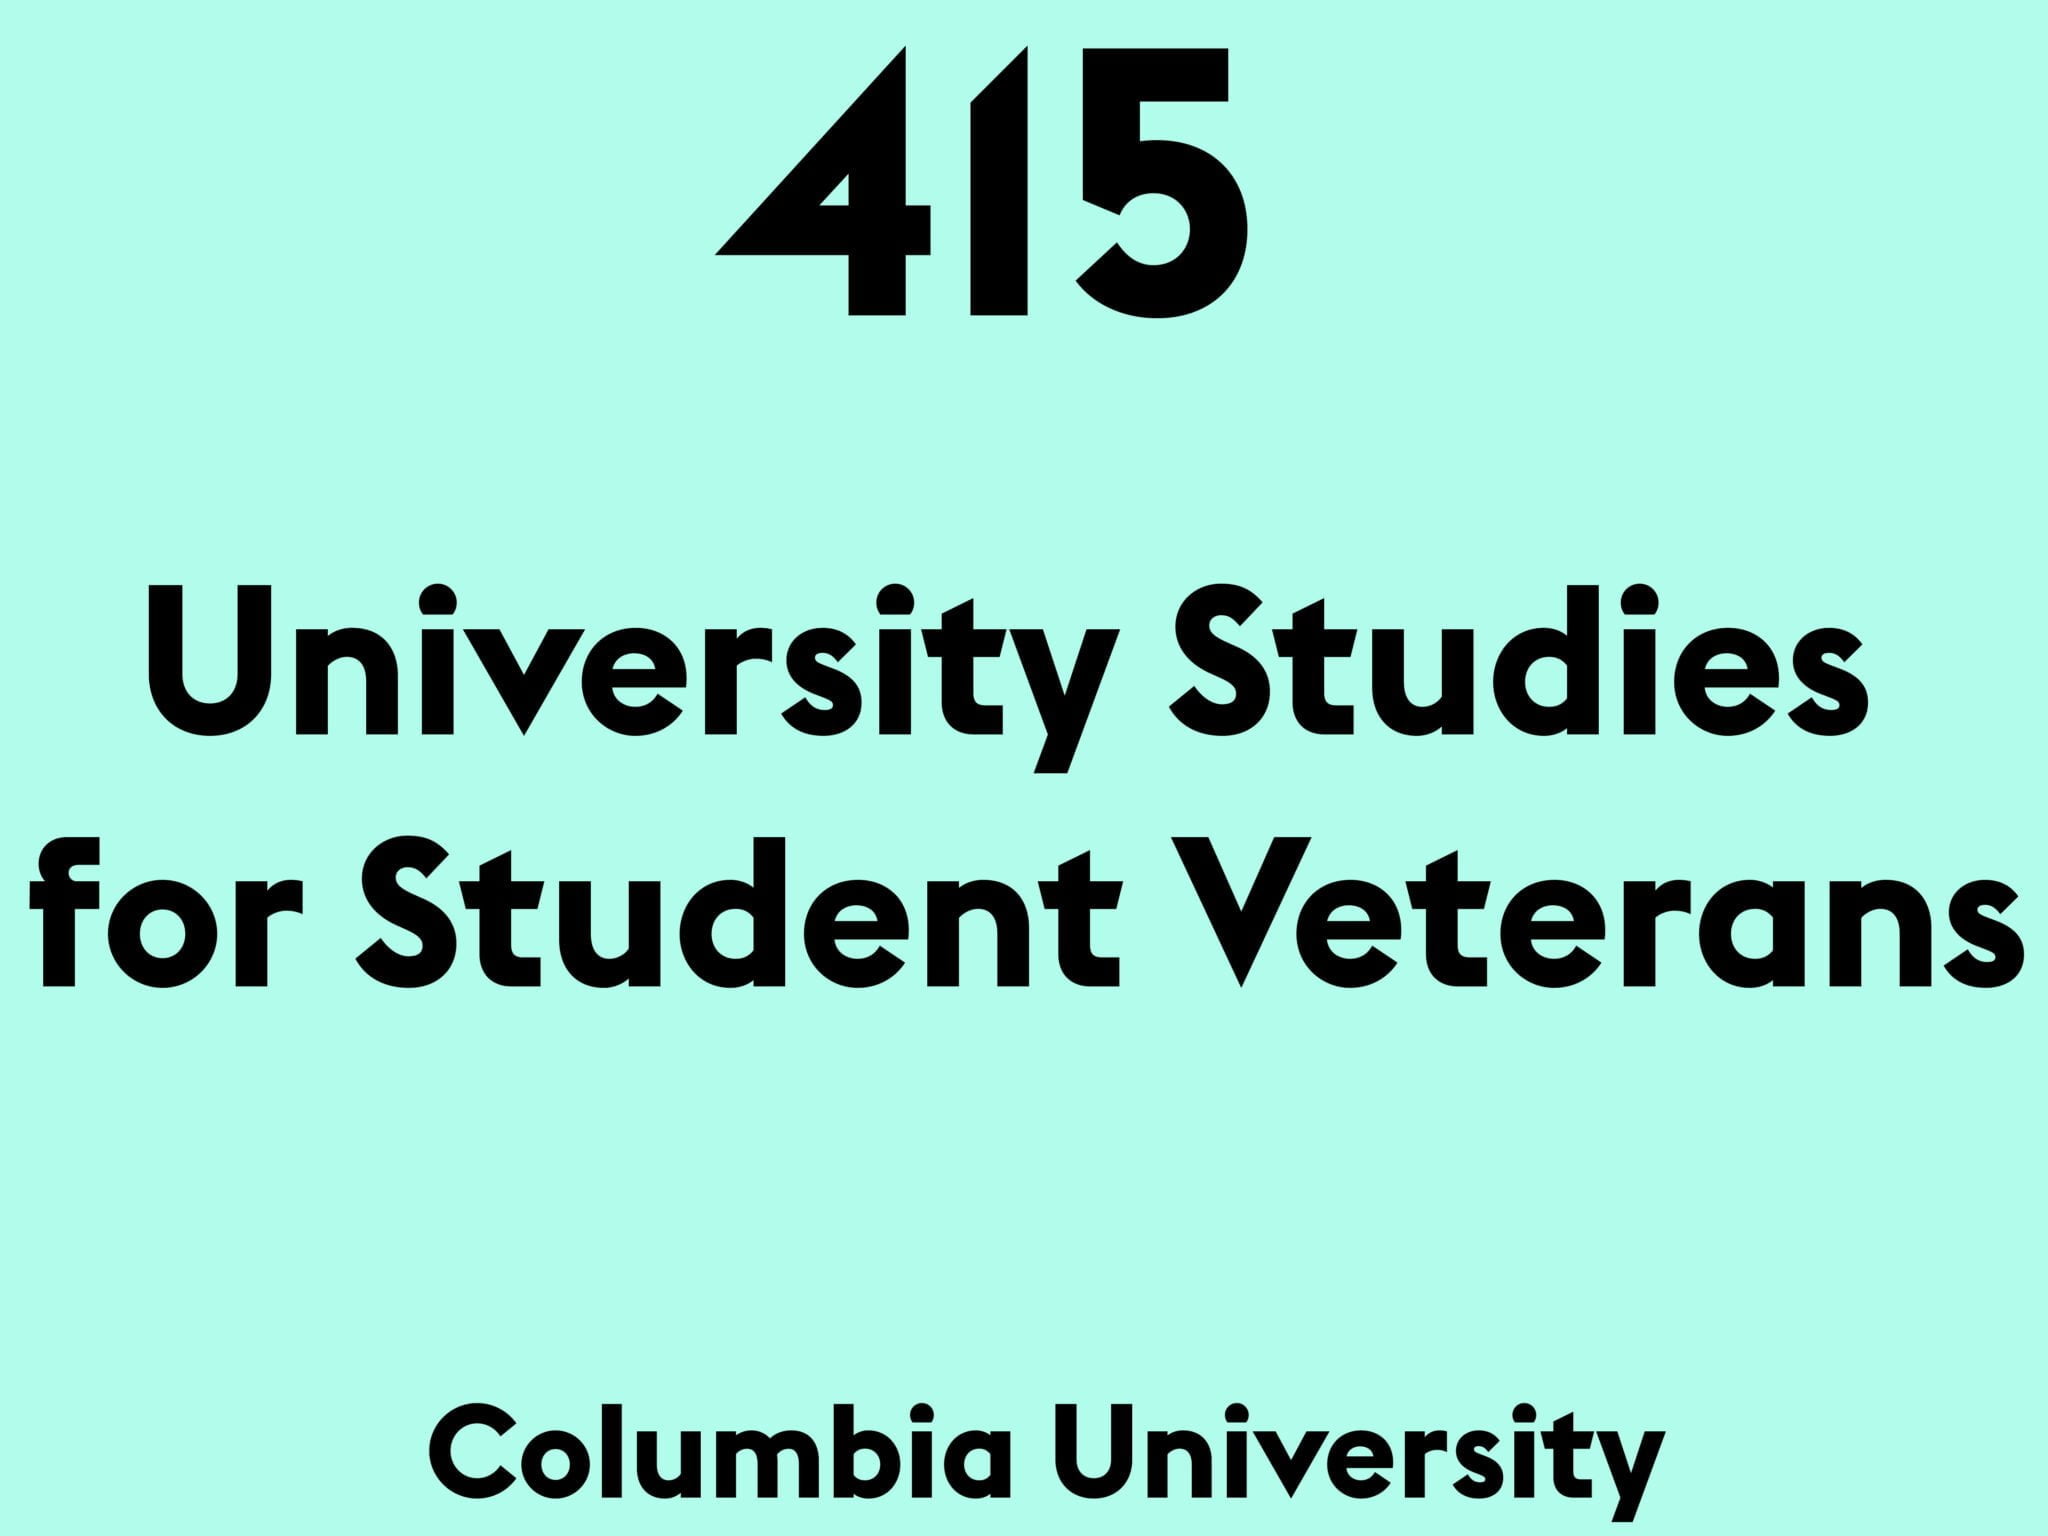 University Studies for Student Veterans